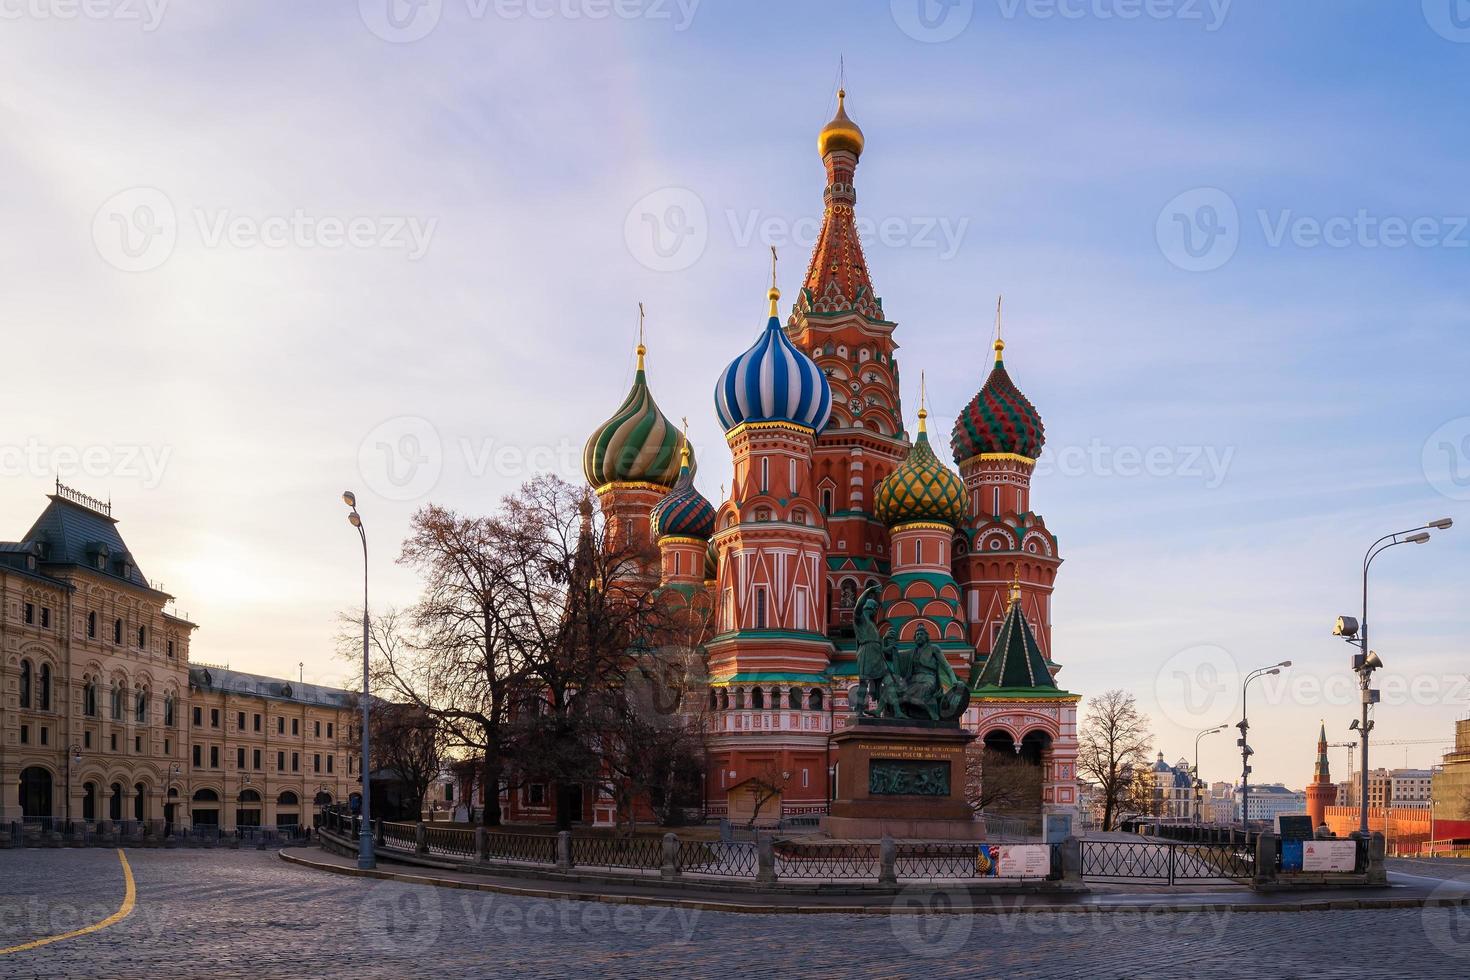 Basilius-Kathedrale auf dem Roten Platz in Moskau, Russland foto